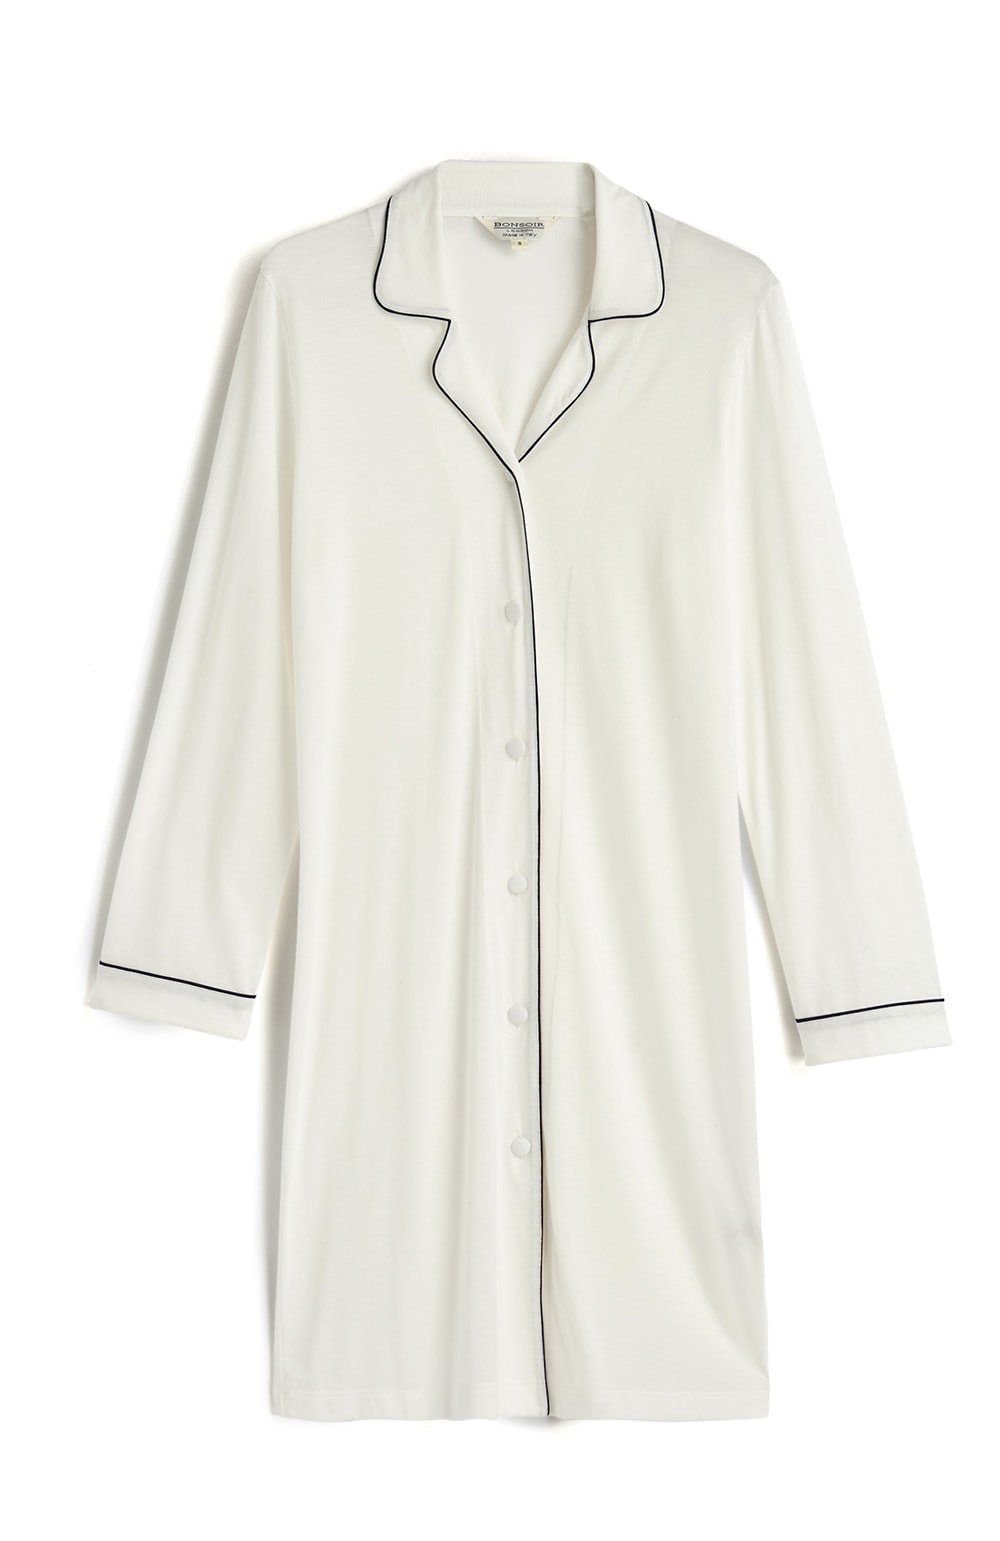 Women's Jersey Nightshirt in White 